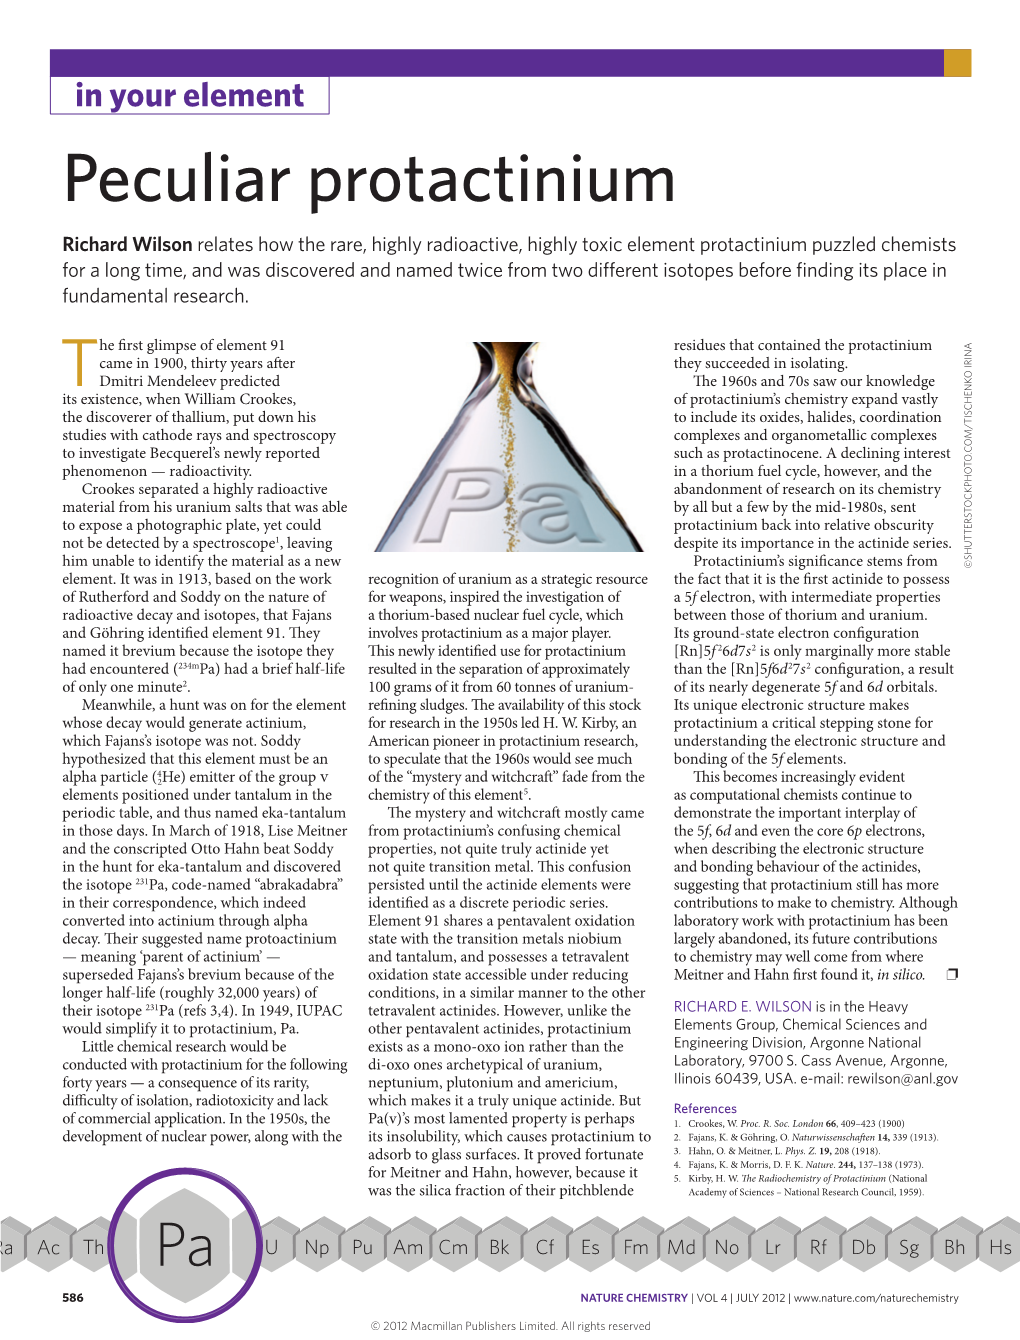 Peculiar Protactinium